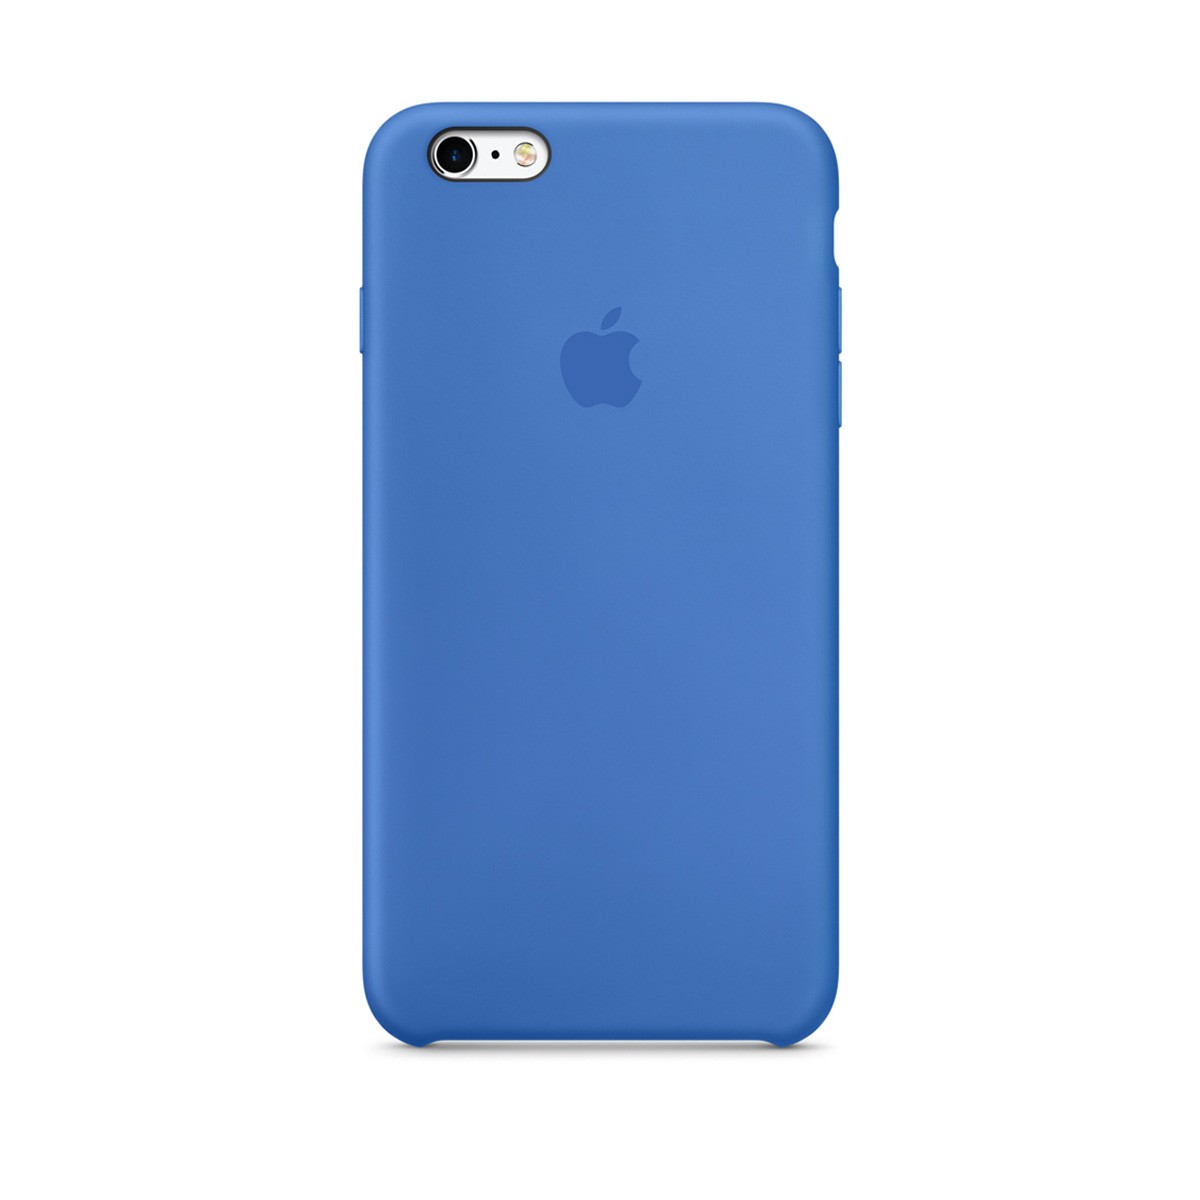 Originální kryt Apple pro iPhone 6/6S královsky modré